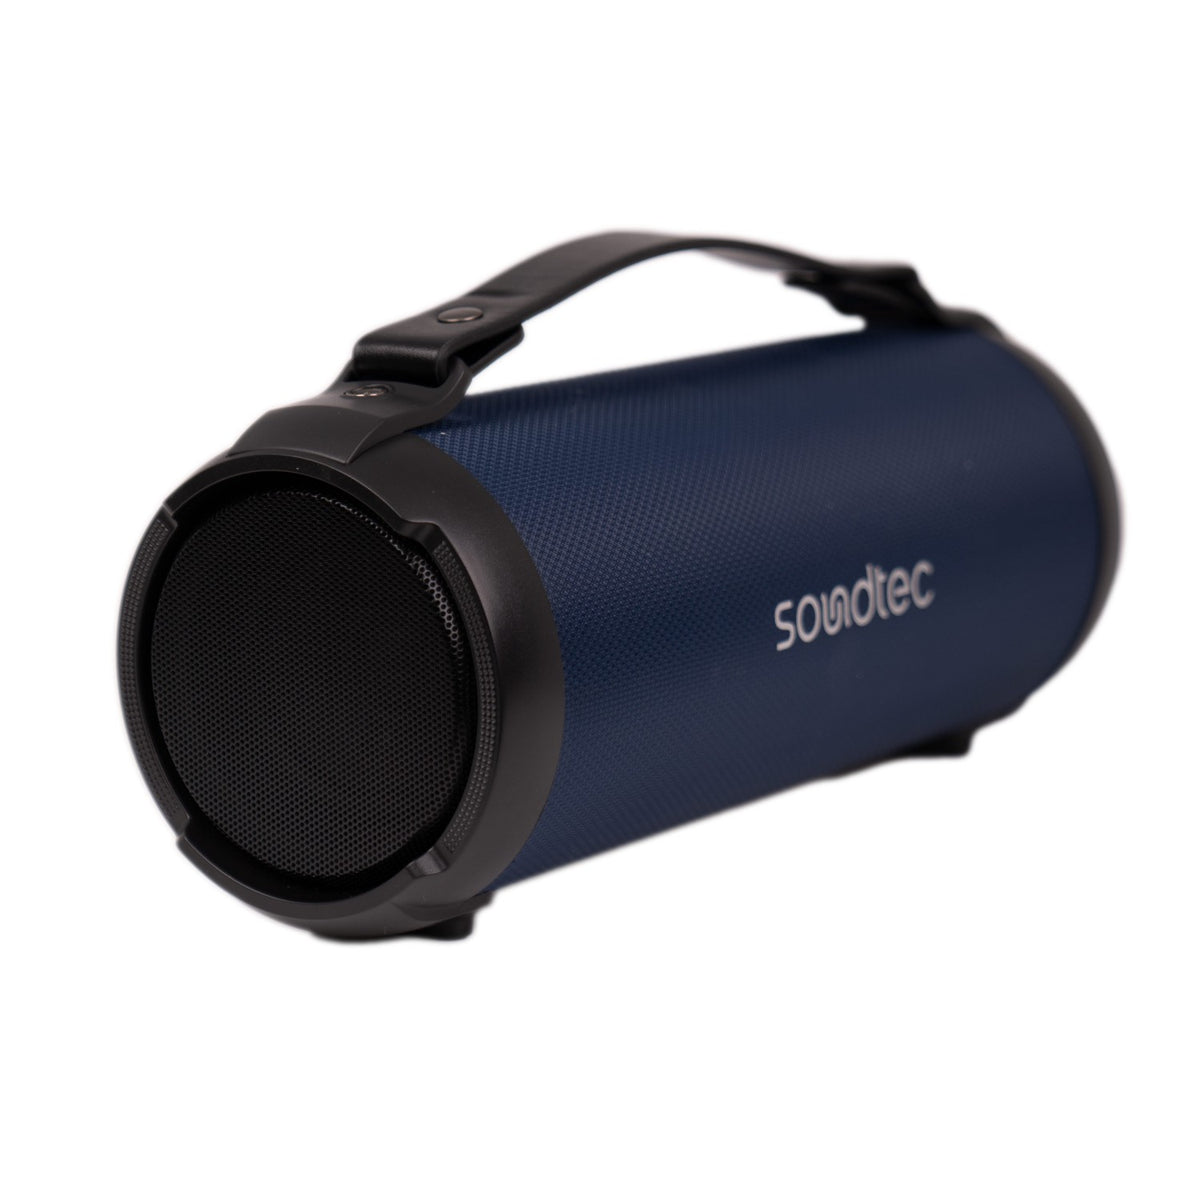 Porodo TRIP Soundtec Basic speaker - Black, Red, Dark Blue [ PDTRIPSPK ]